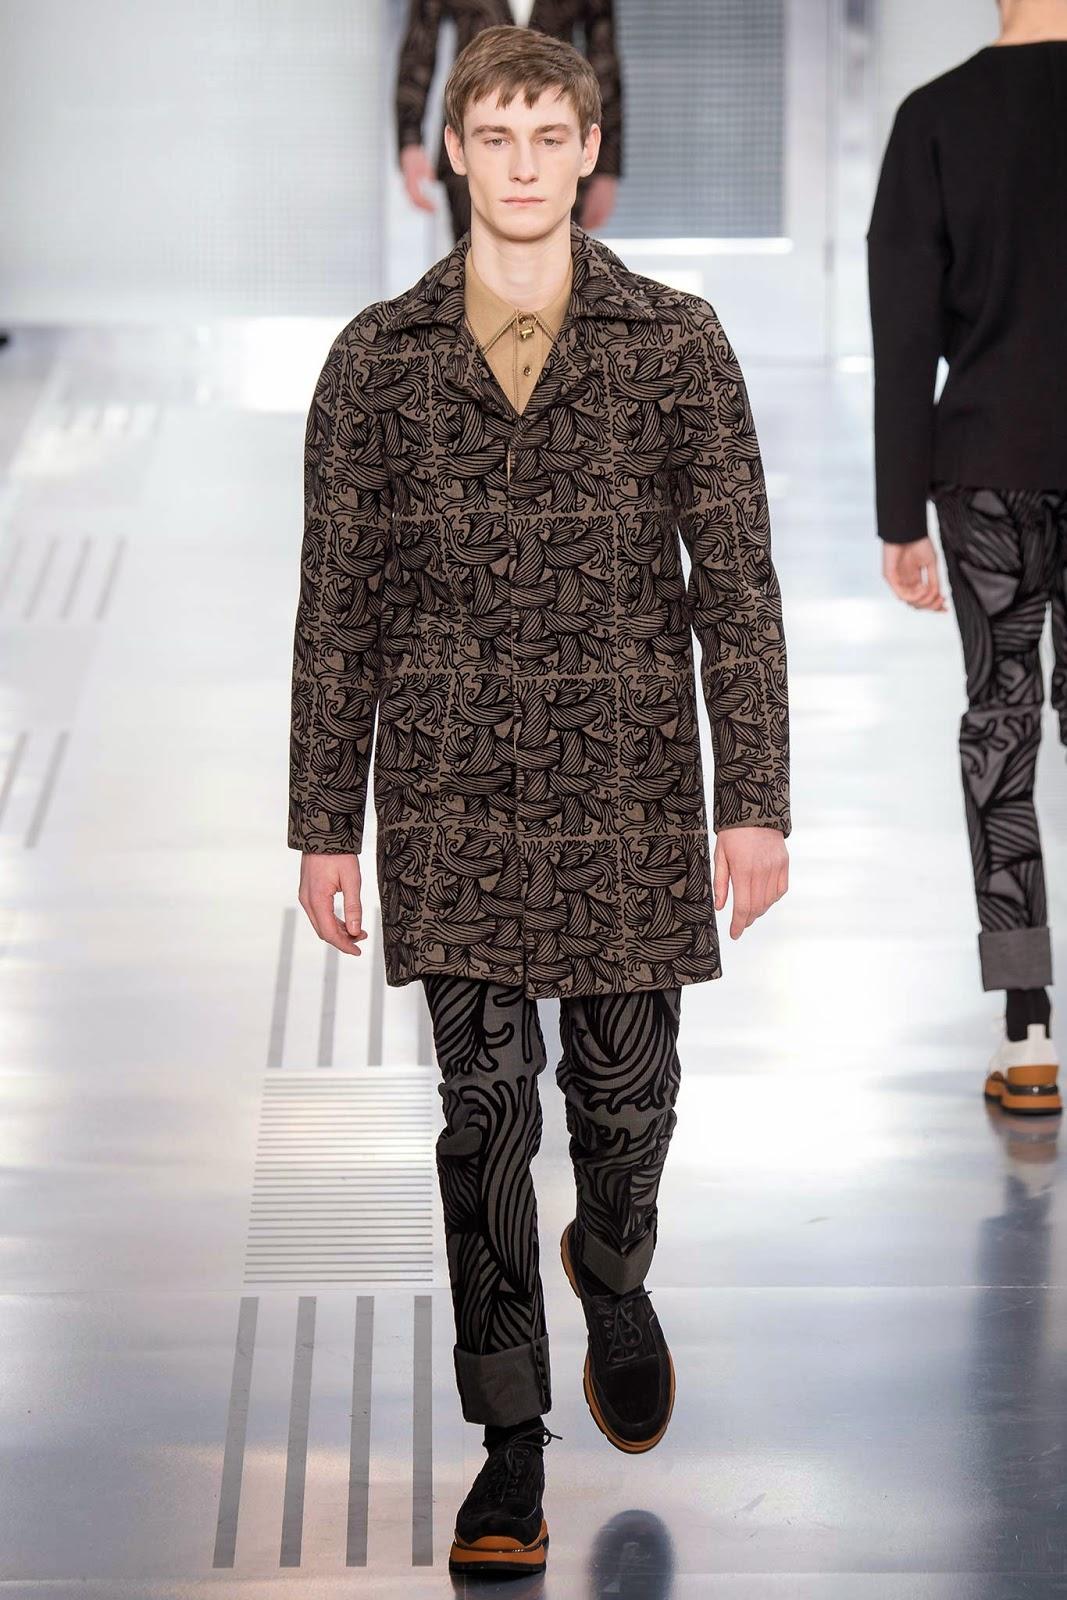 On continue de barouder avec la collection masculine hivernale Louis Vuitton...